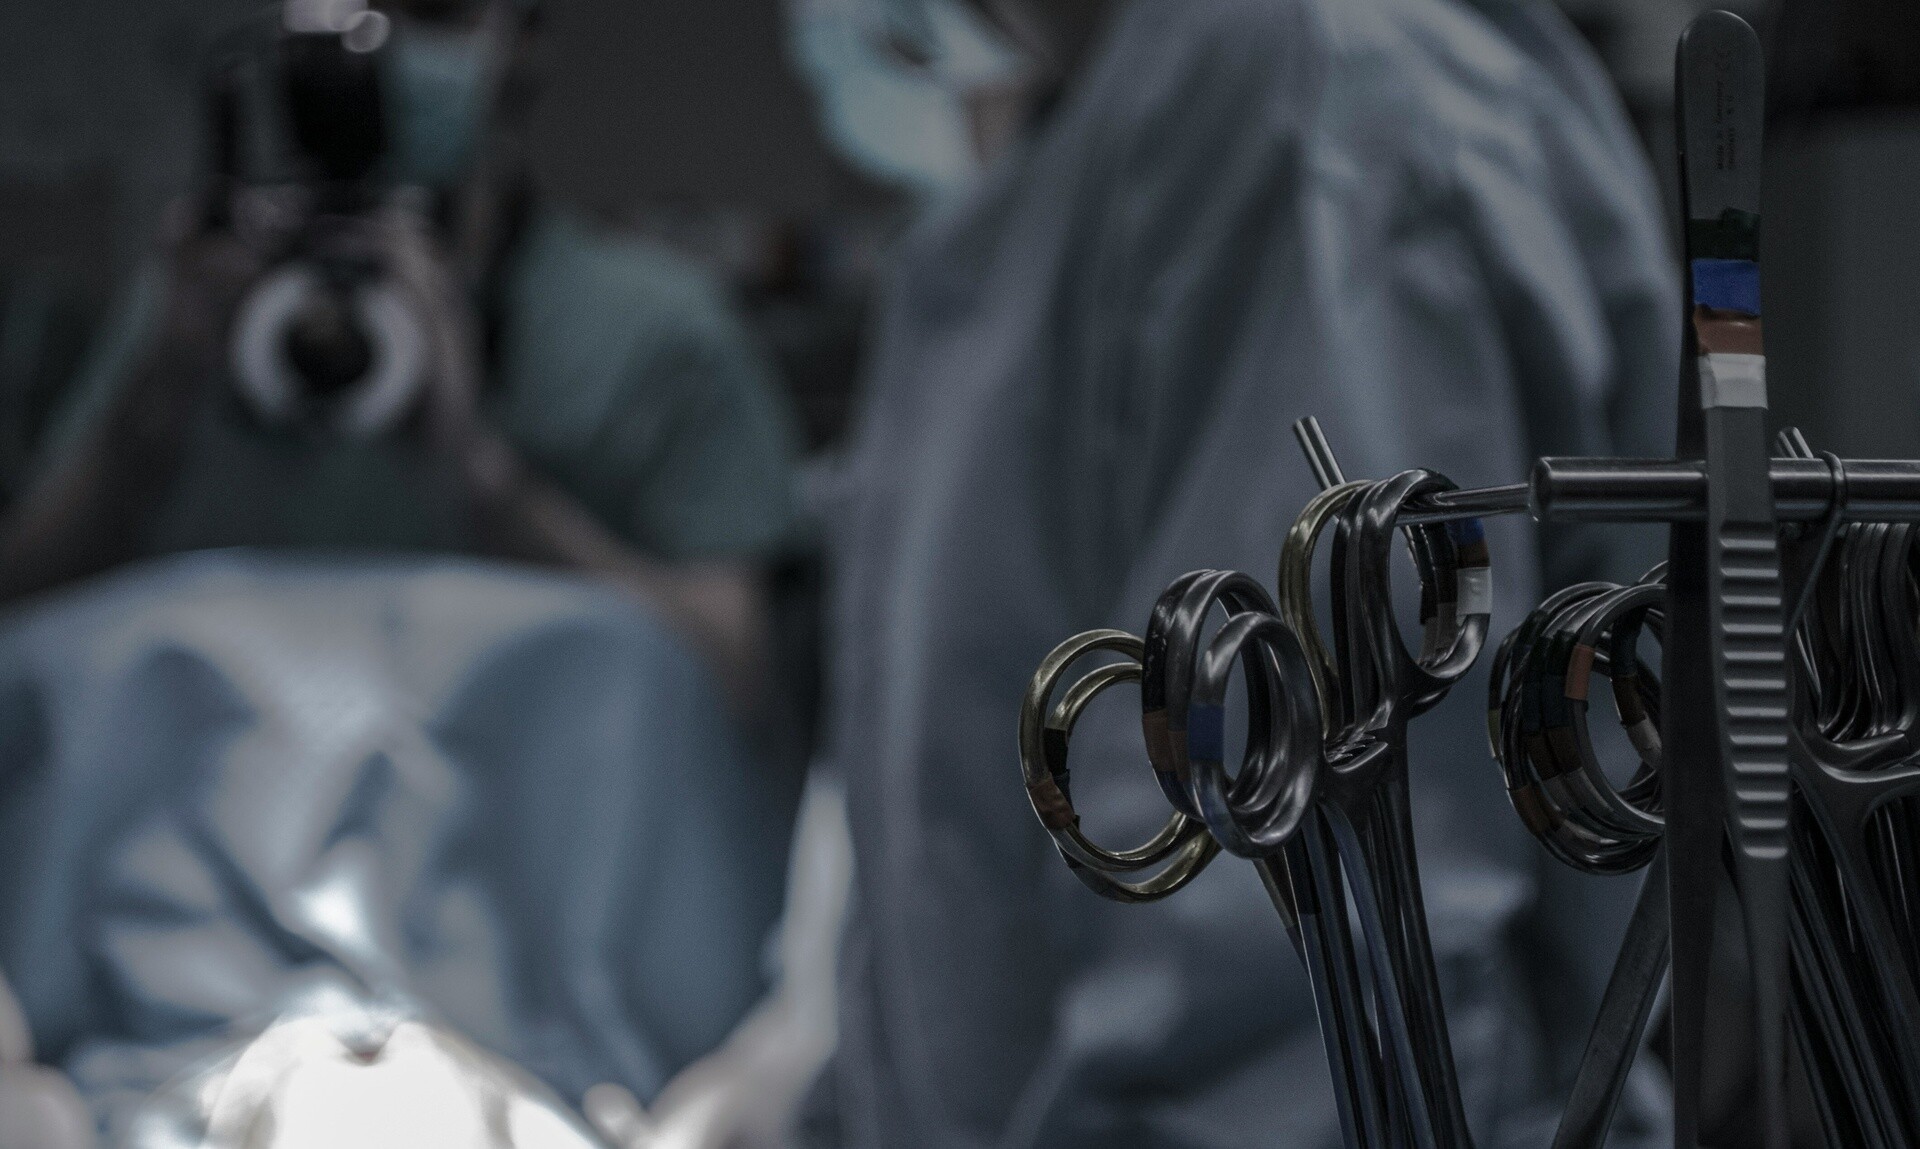 ΠΑΓΝΗ: Πληροφορίες ότι χειρούργησαν σε απογευματινό ιατρείο ορθοπεδικό περιστατικό